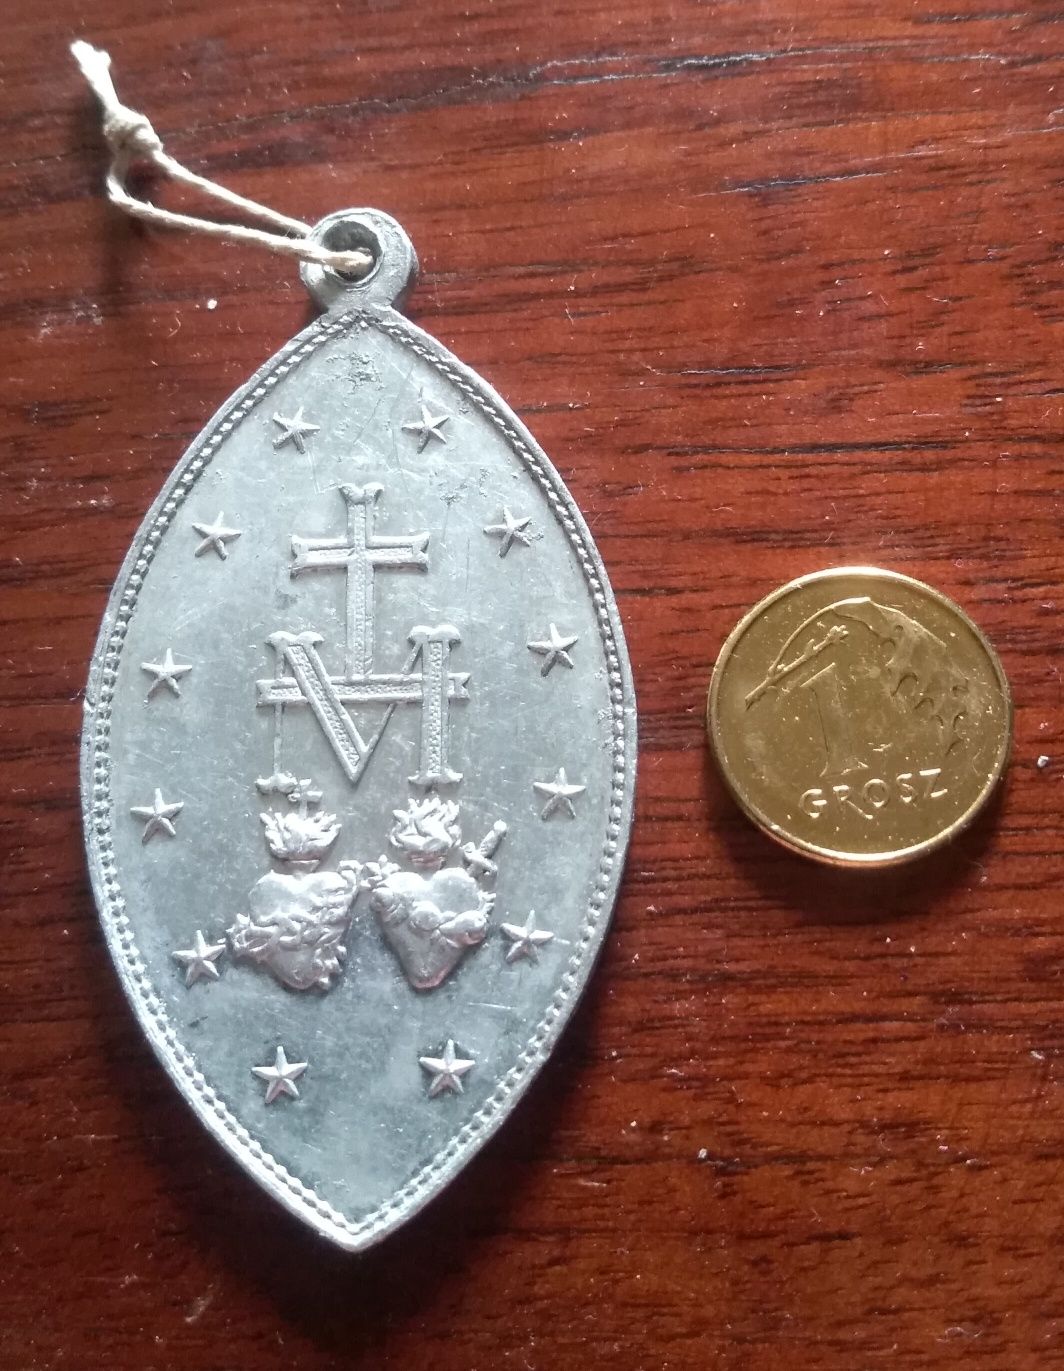 Przedwojenny medalik z wizerunkiem Matki Boskiej duży